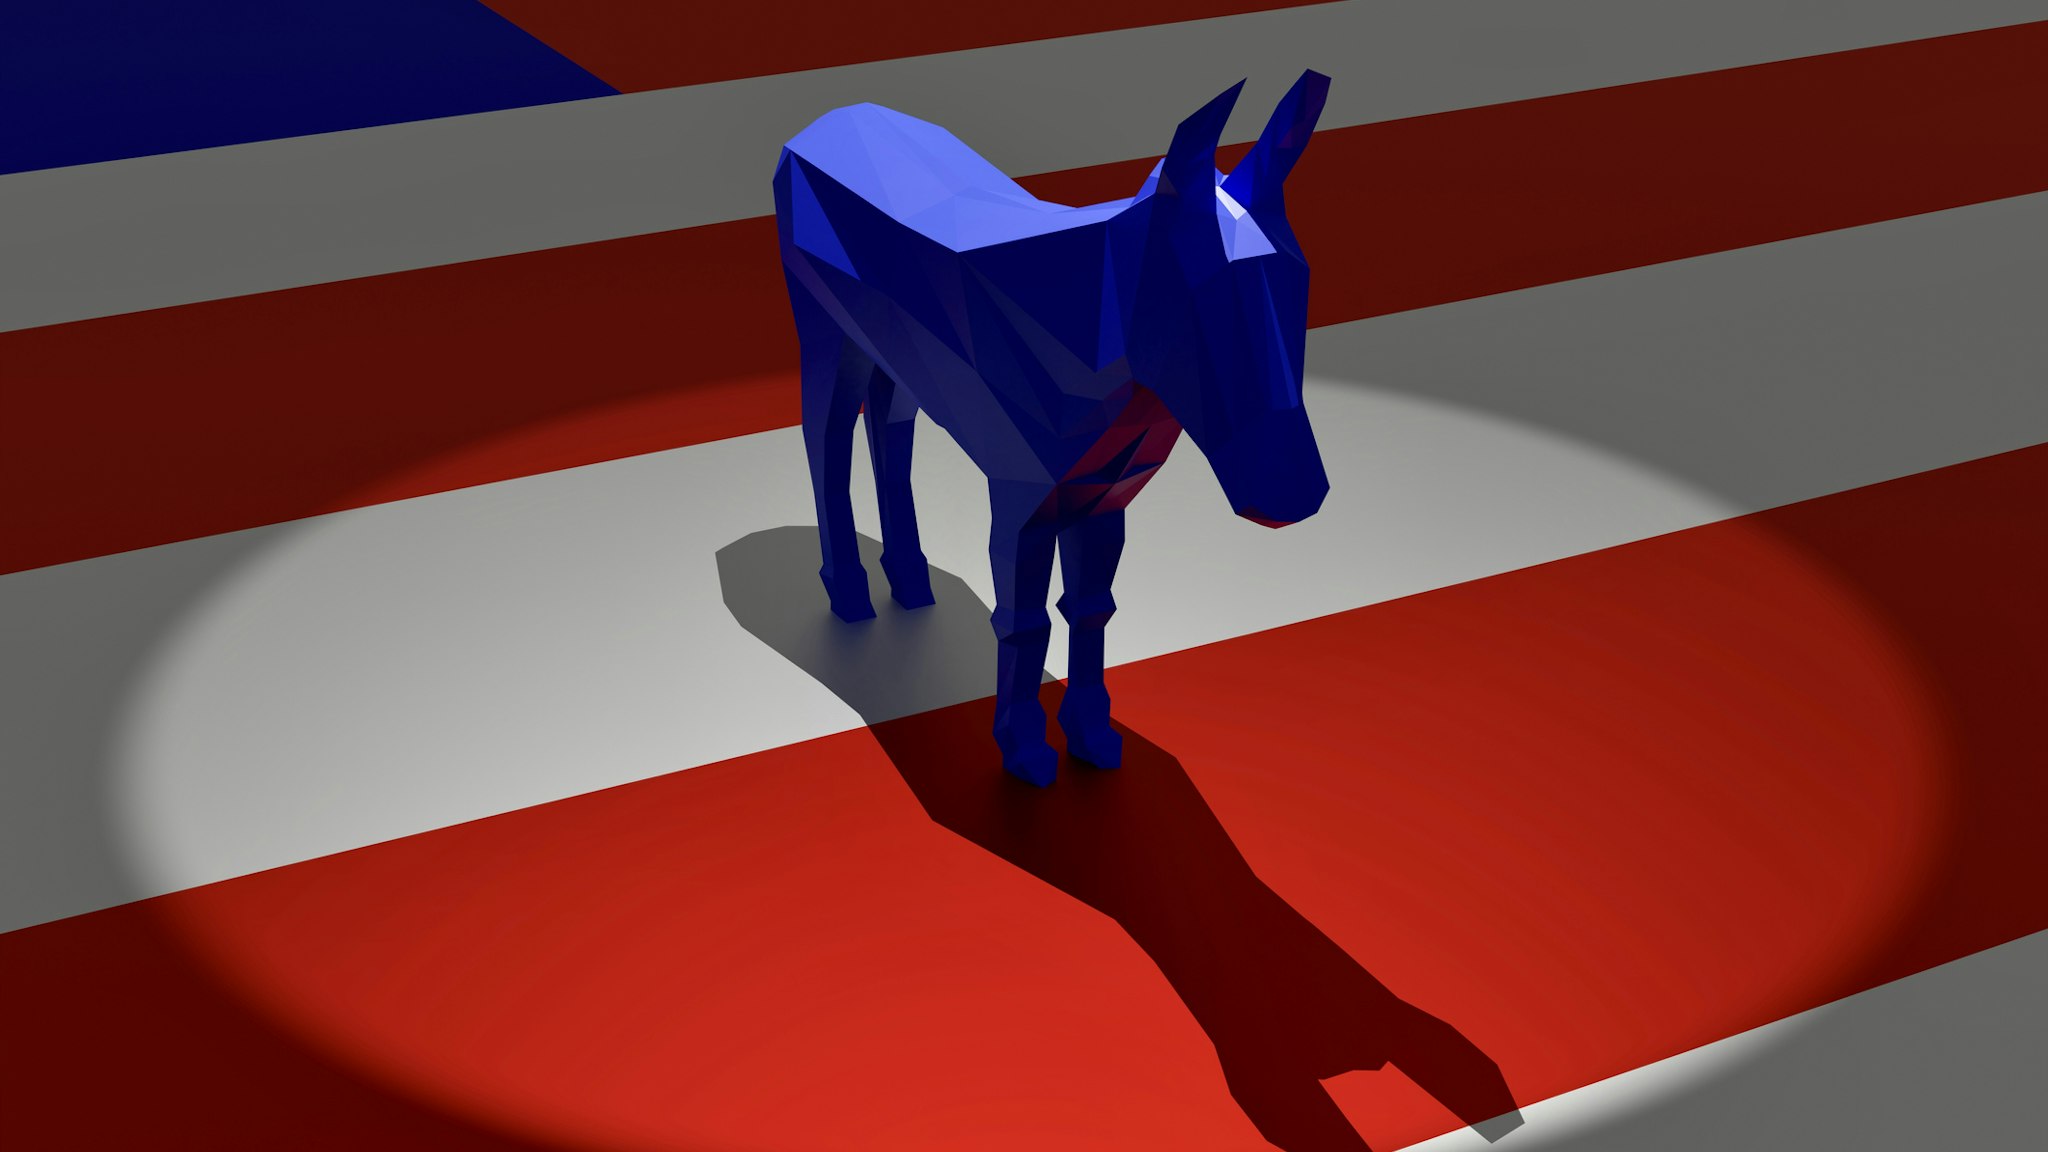 Democratic Party symbol